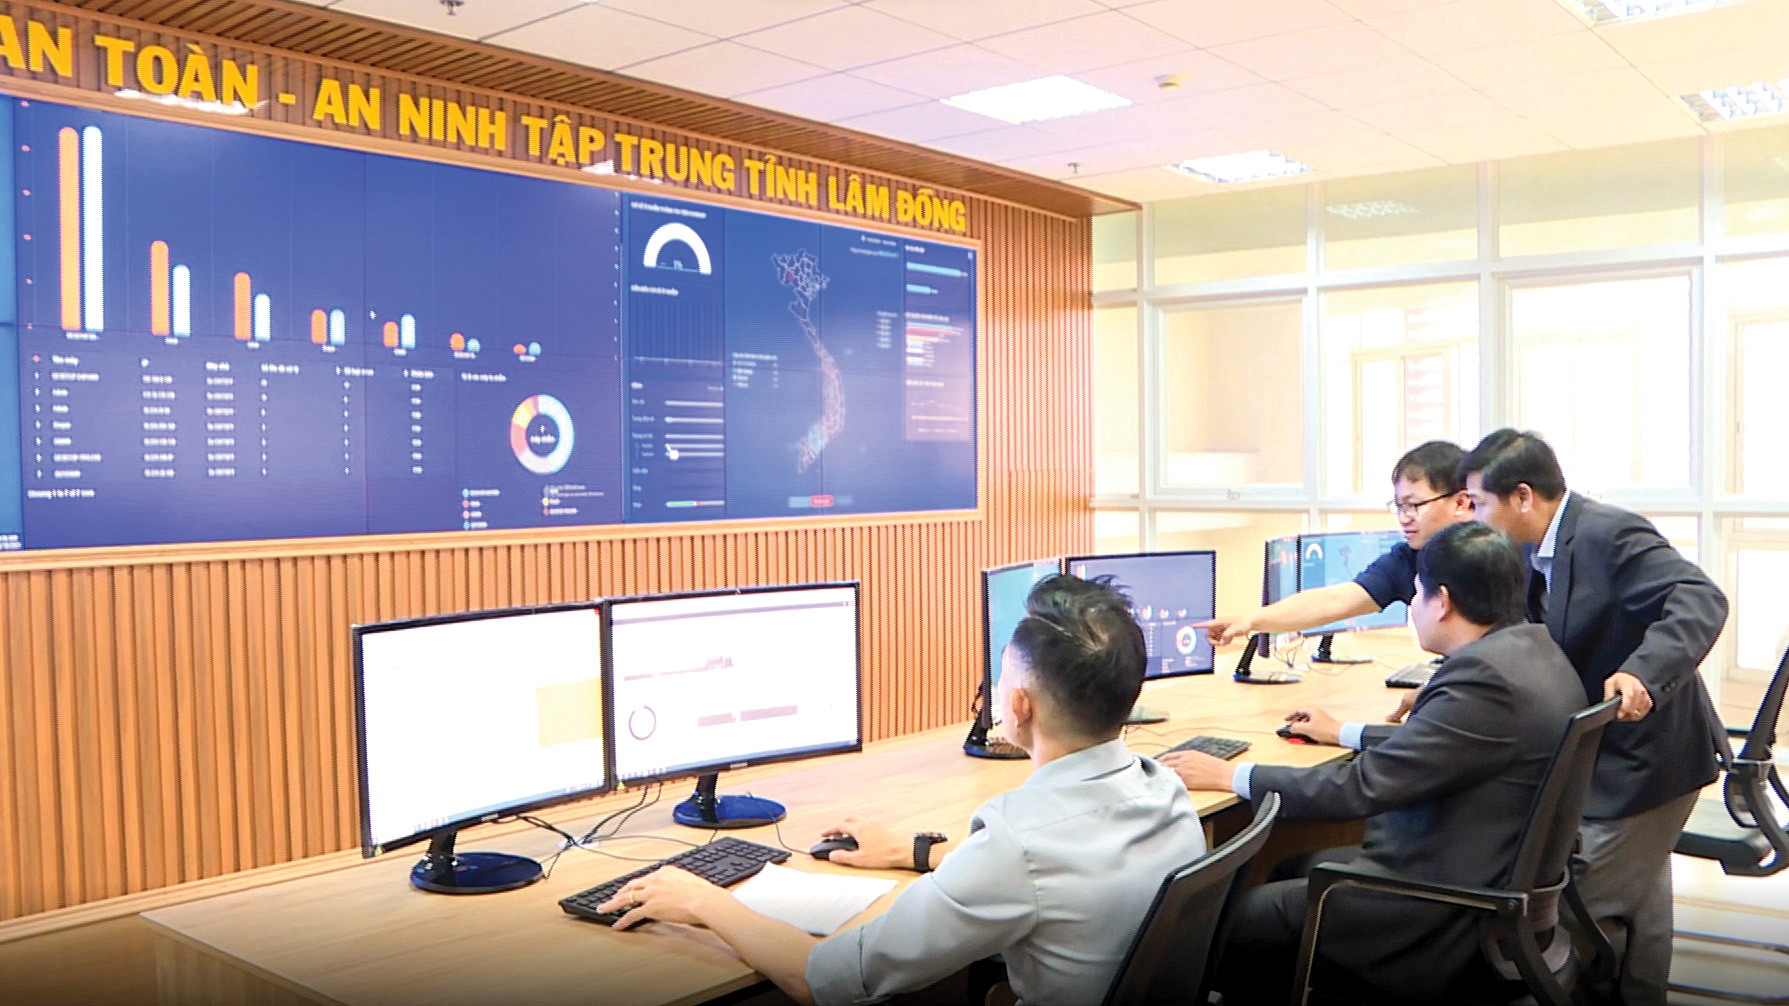 Trung tâm Giám sát an toàn an ninh tập trung tỉnh Lâm Đồng vừa chính thức khai trương và vận hành